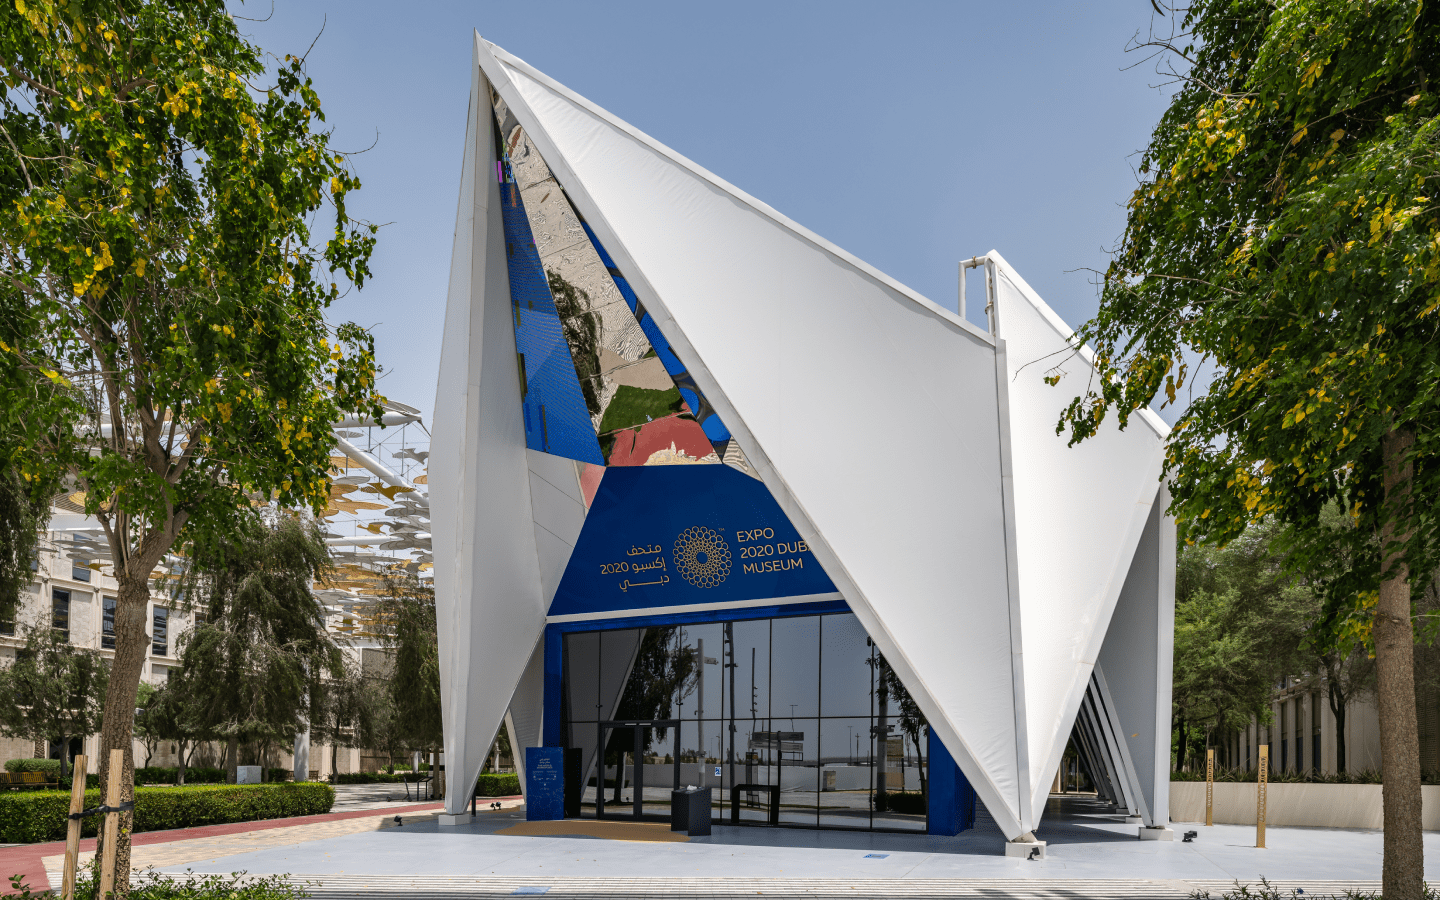 Expo 2020 Dubai Museum